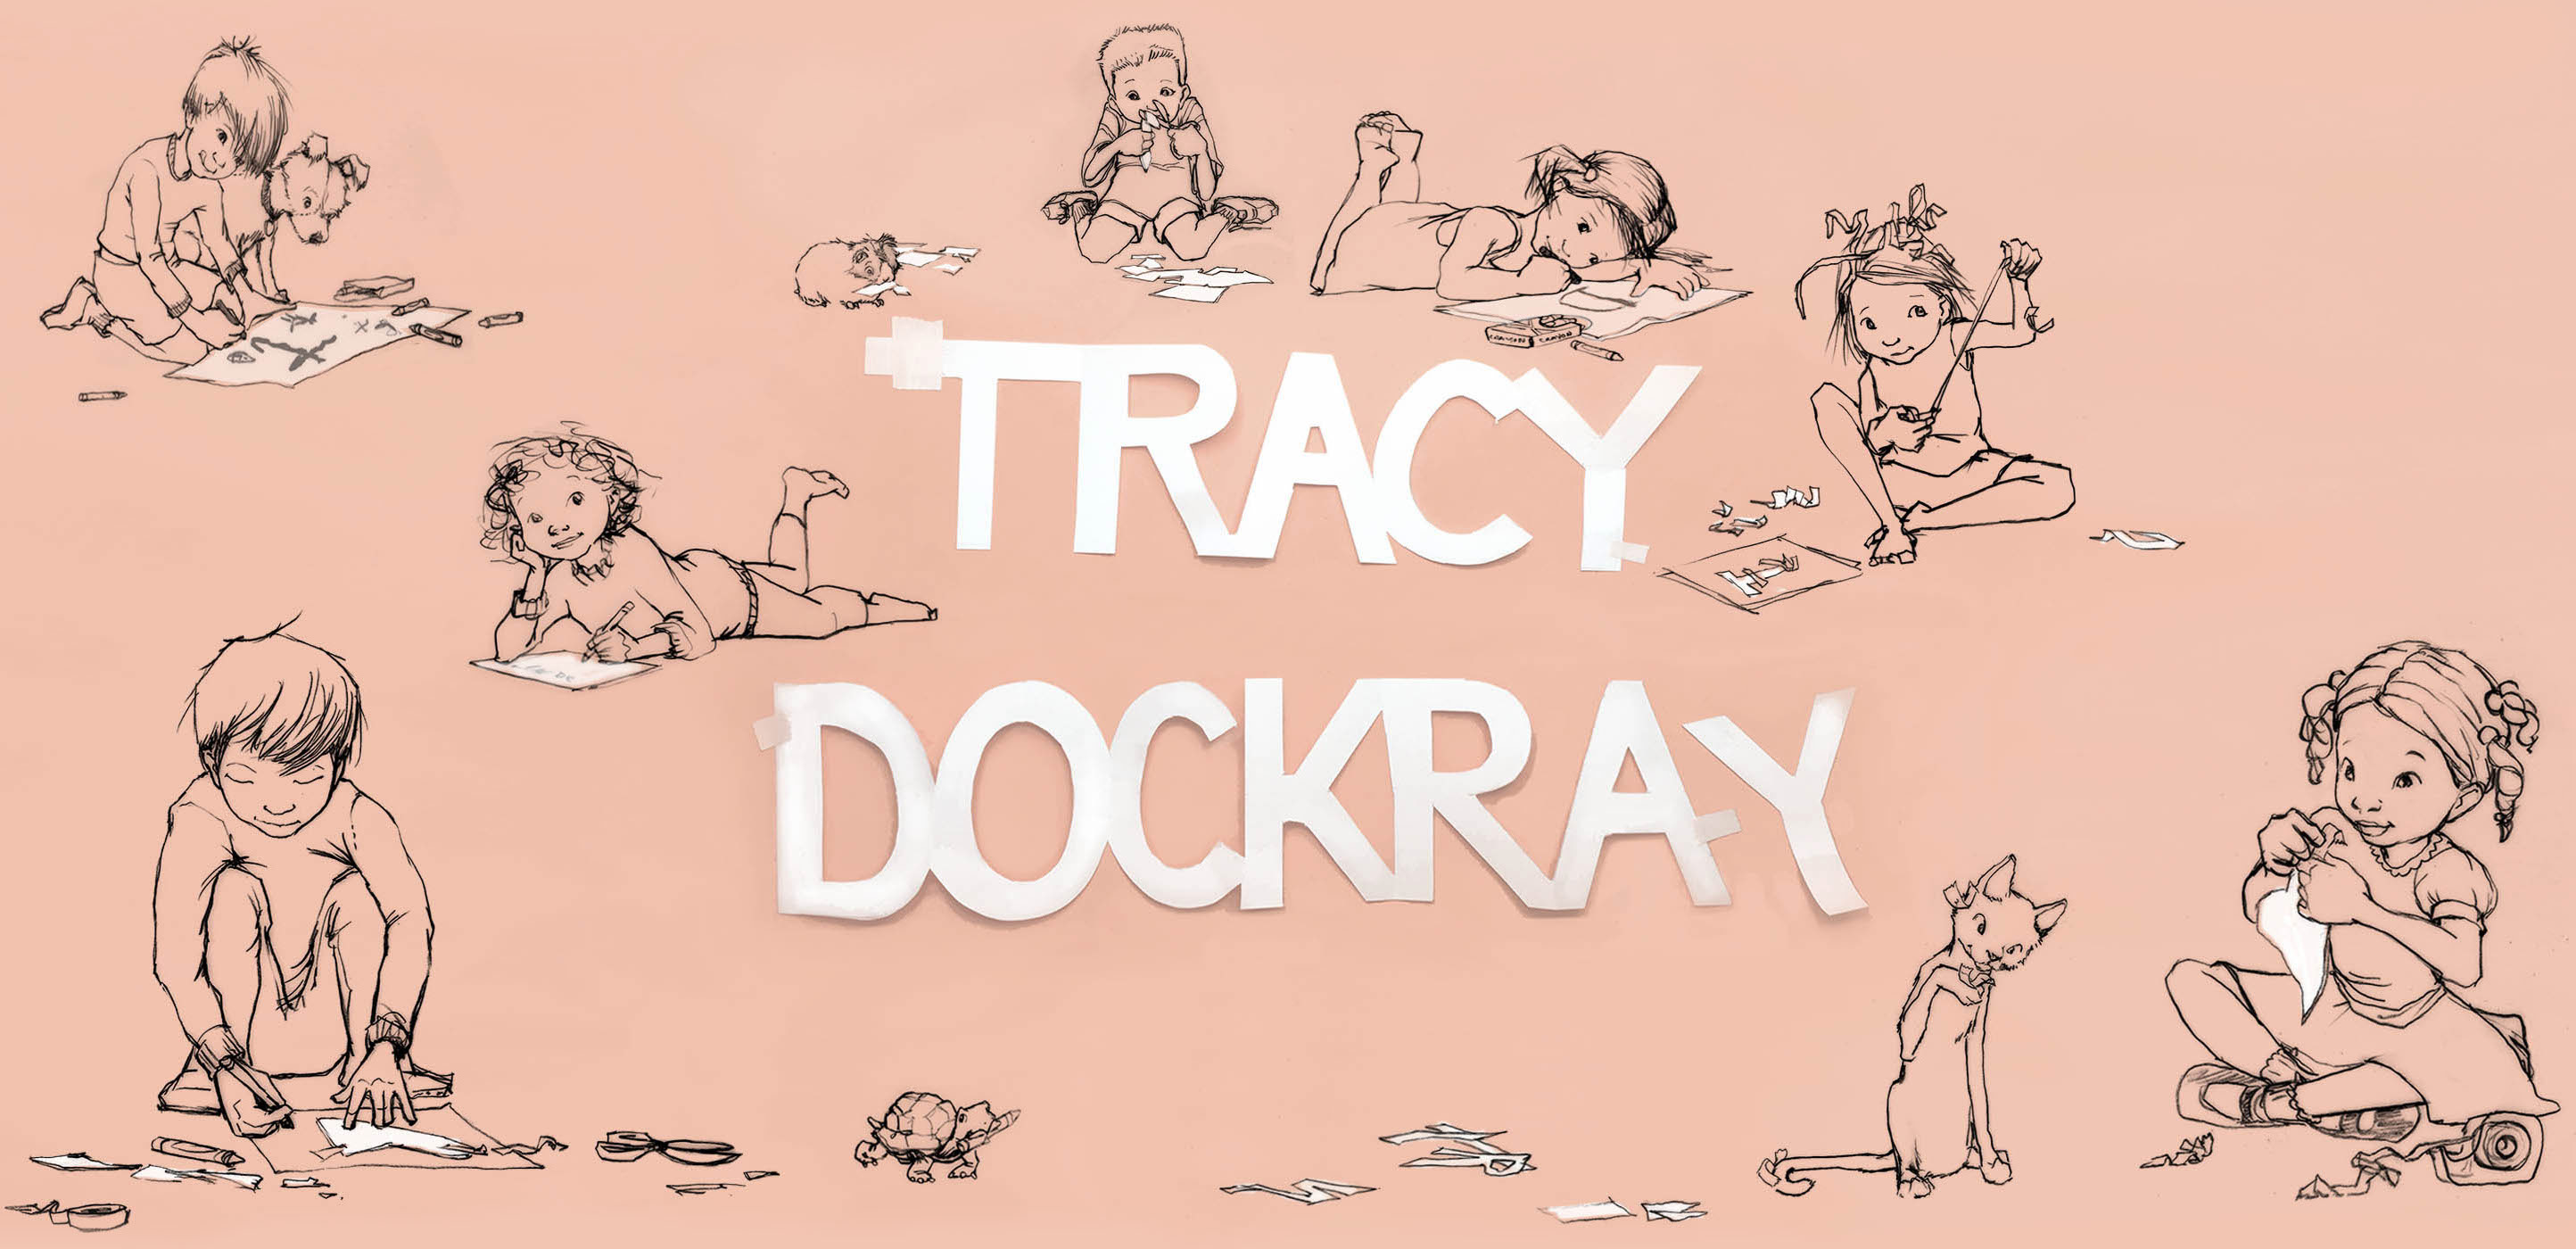 Tracy Dockray